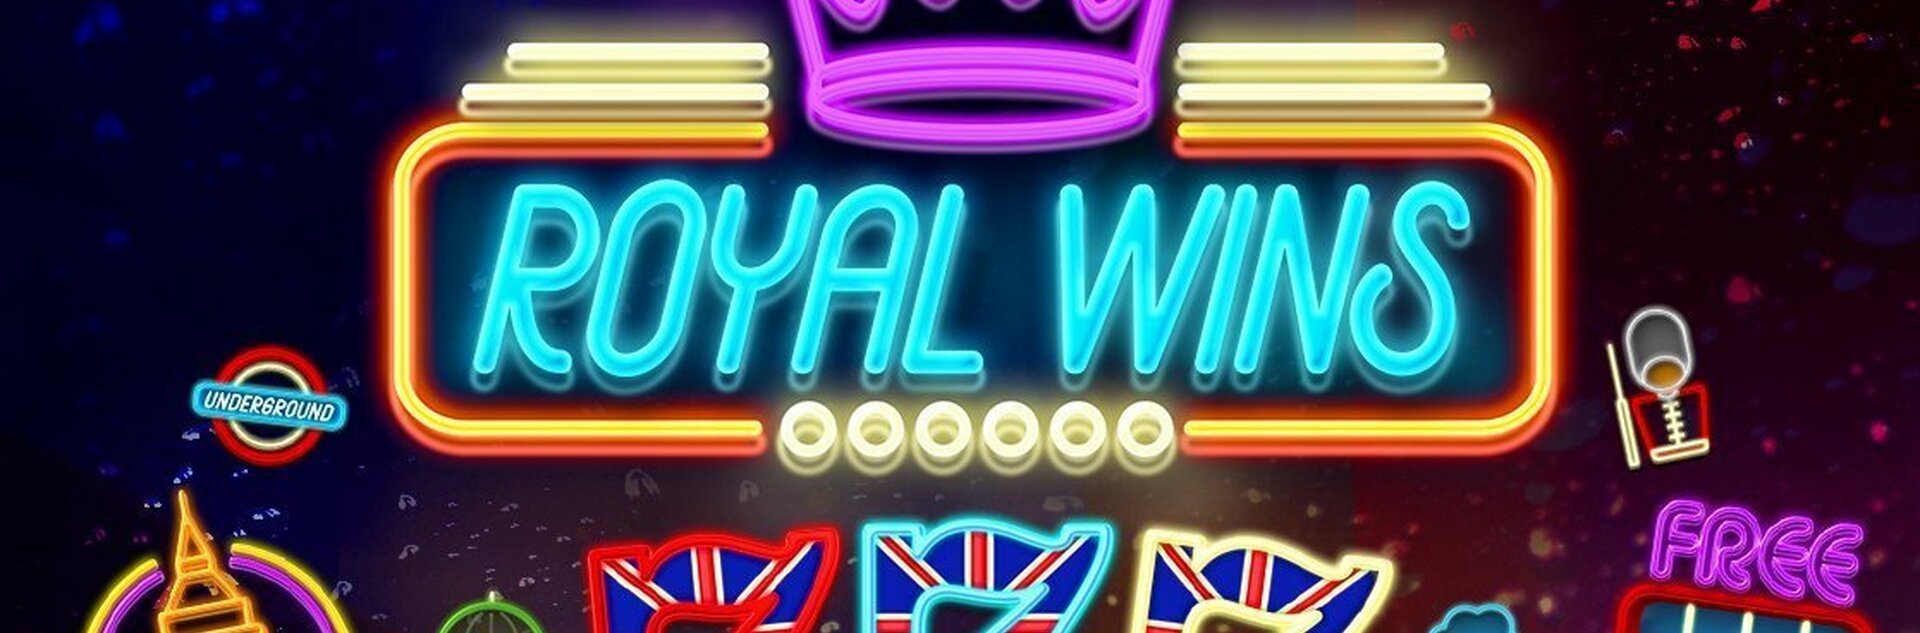 Play Royal Wins Free Slot